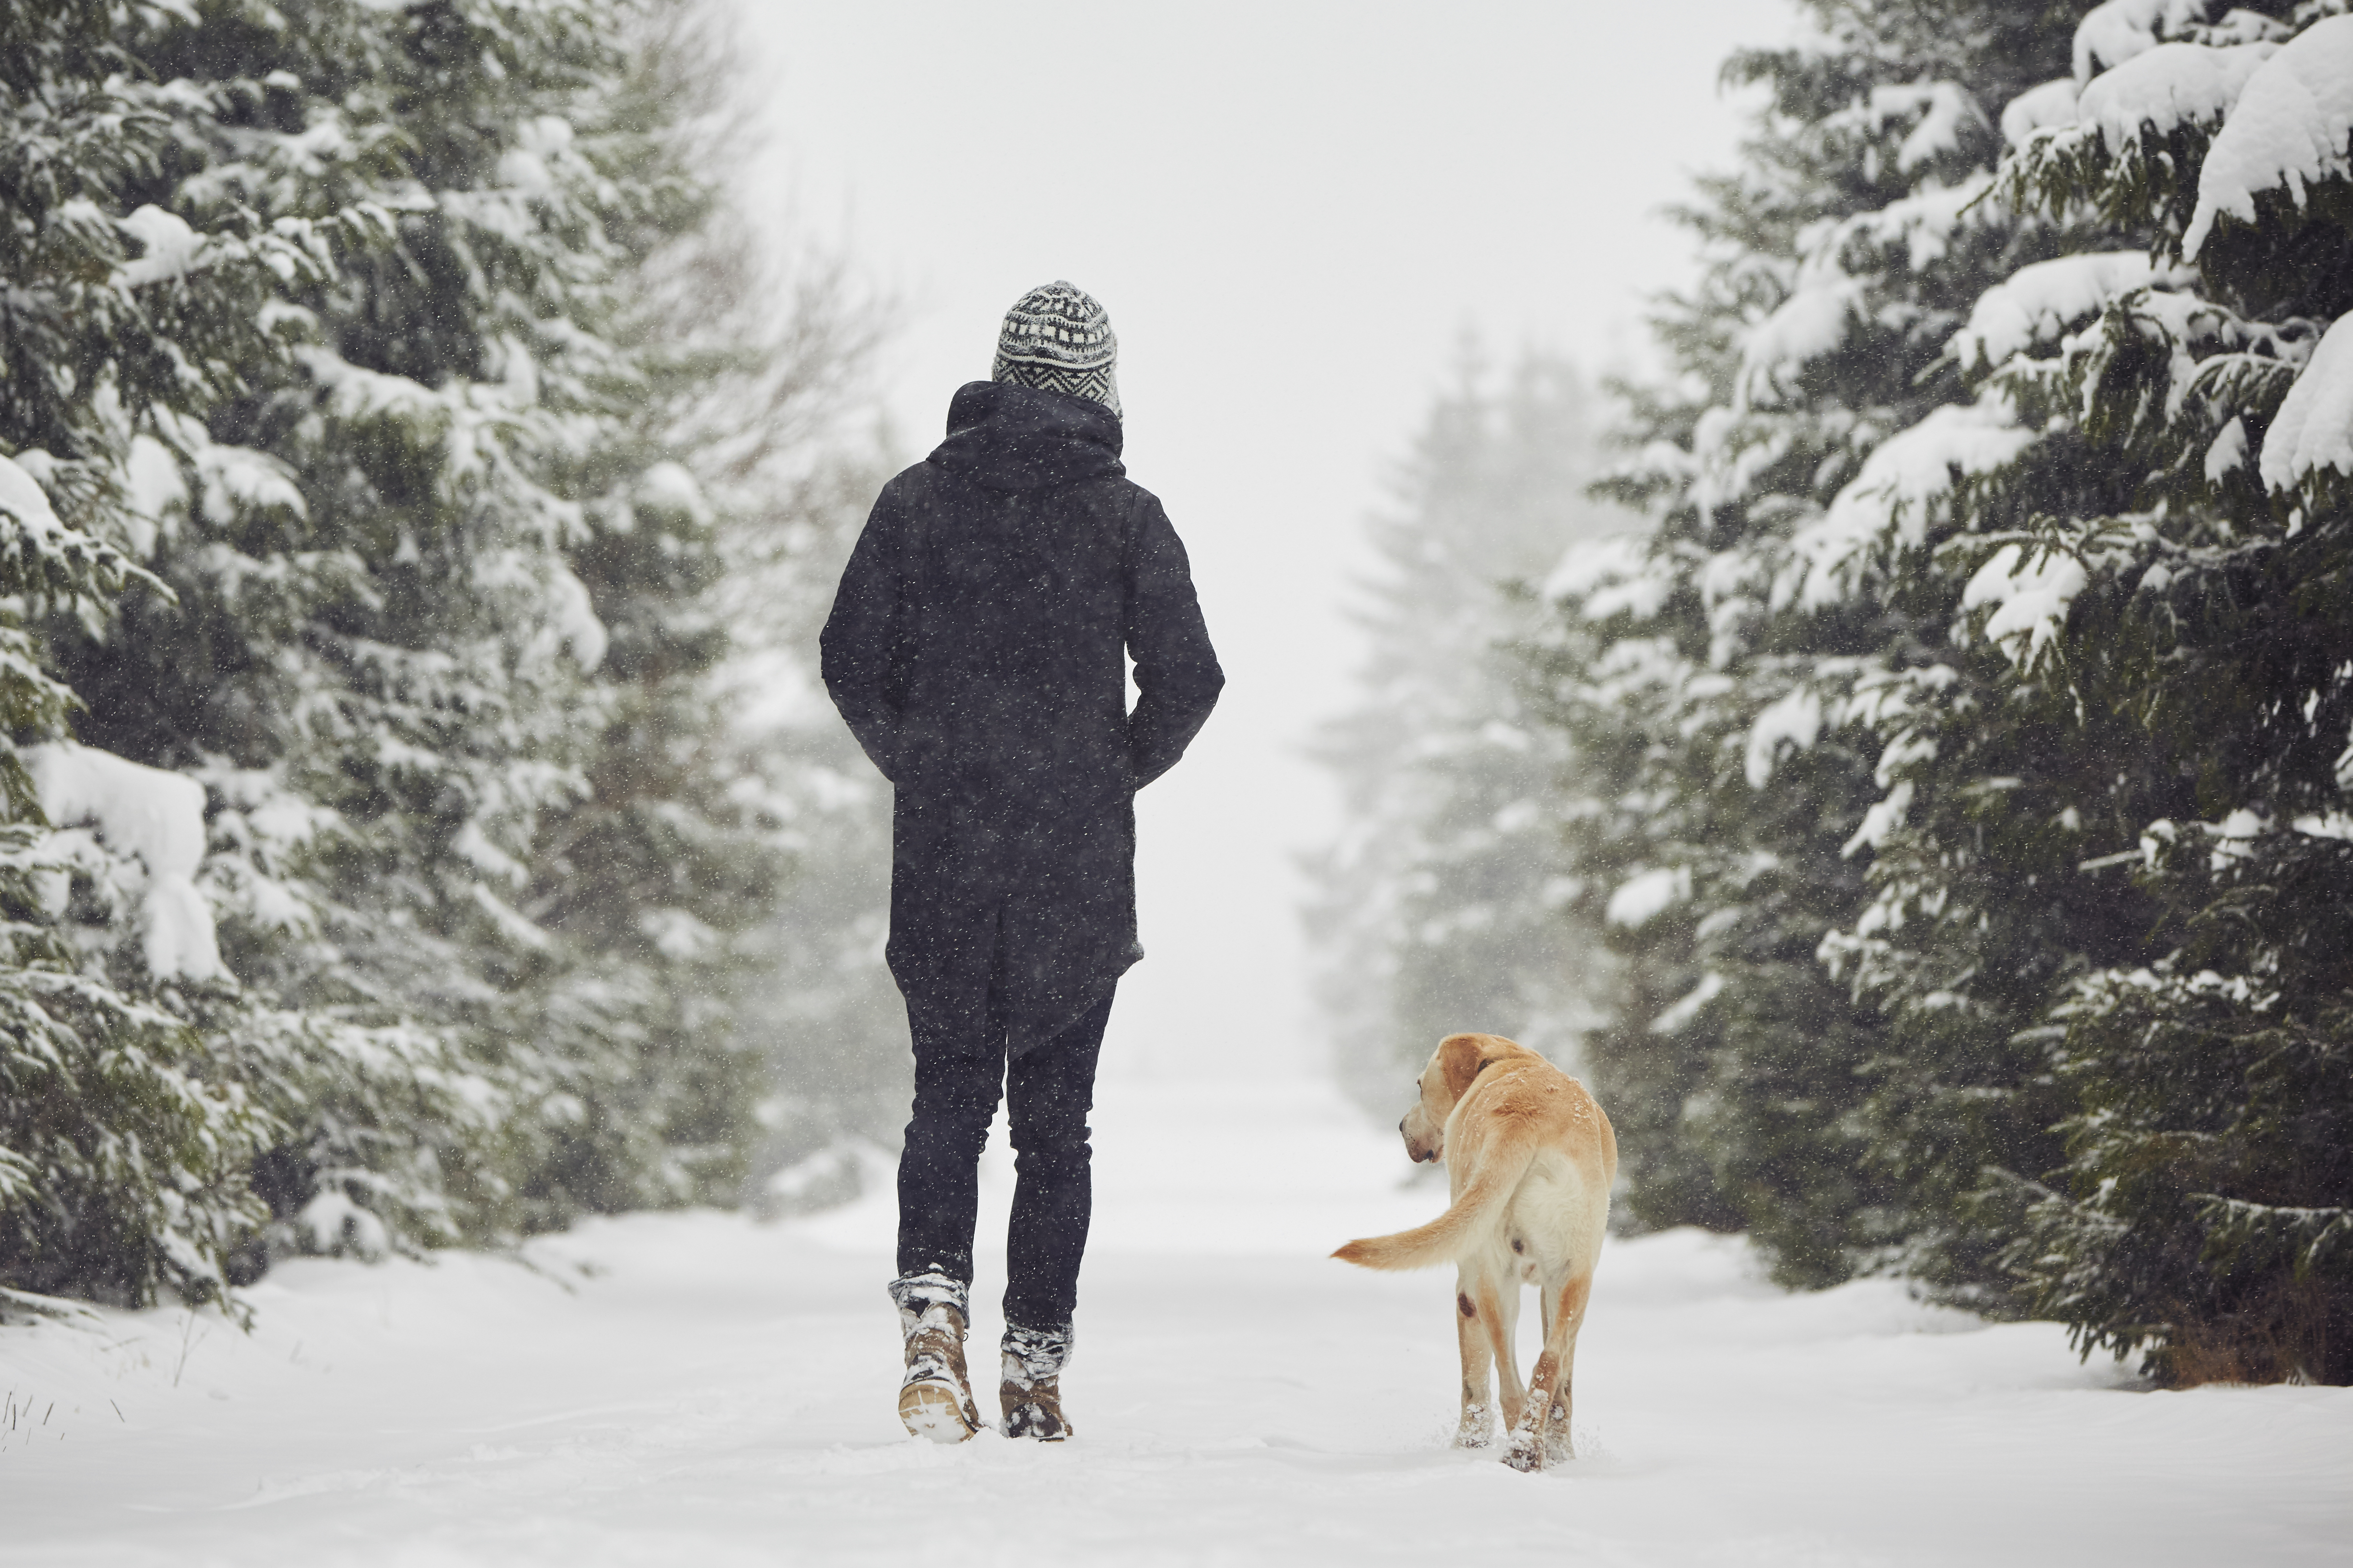 Идя рядом с собакой. Люди зимой. Прогулка зимой. Зимняя прогулка с собакой. Люди гуляют зимой.